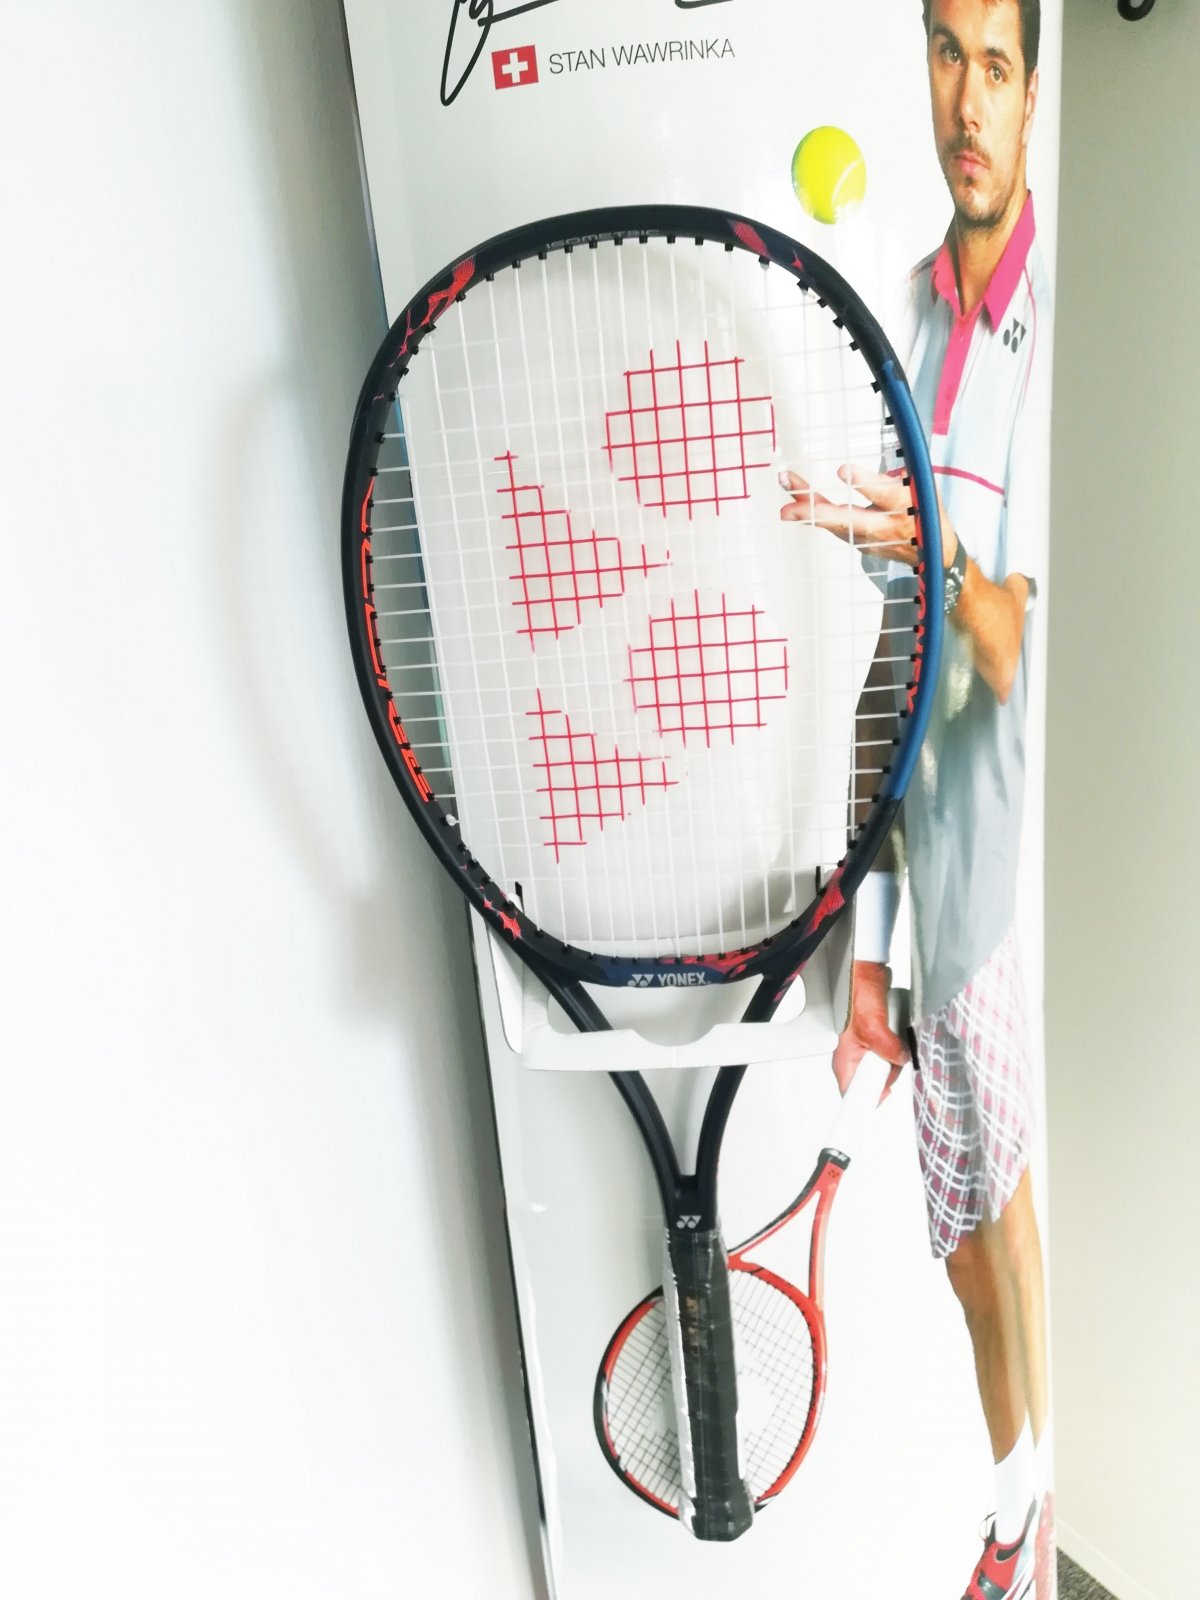 Nowa rakieta do tenisa Yonex Vcore Pro – czym się wyróżnia?